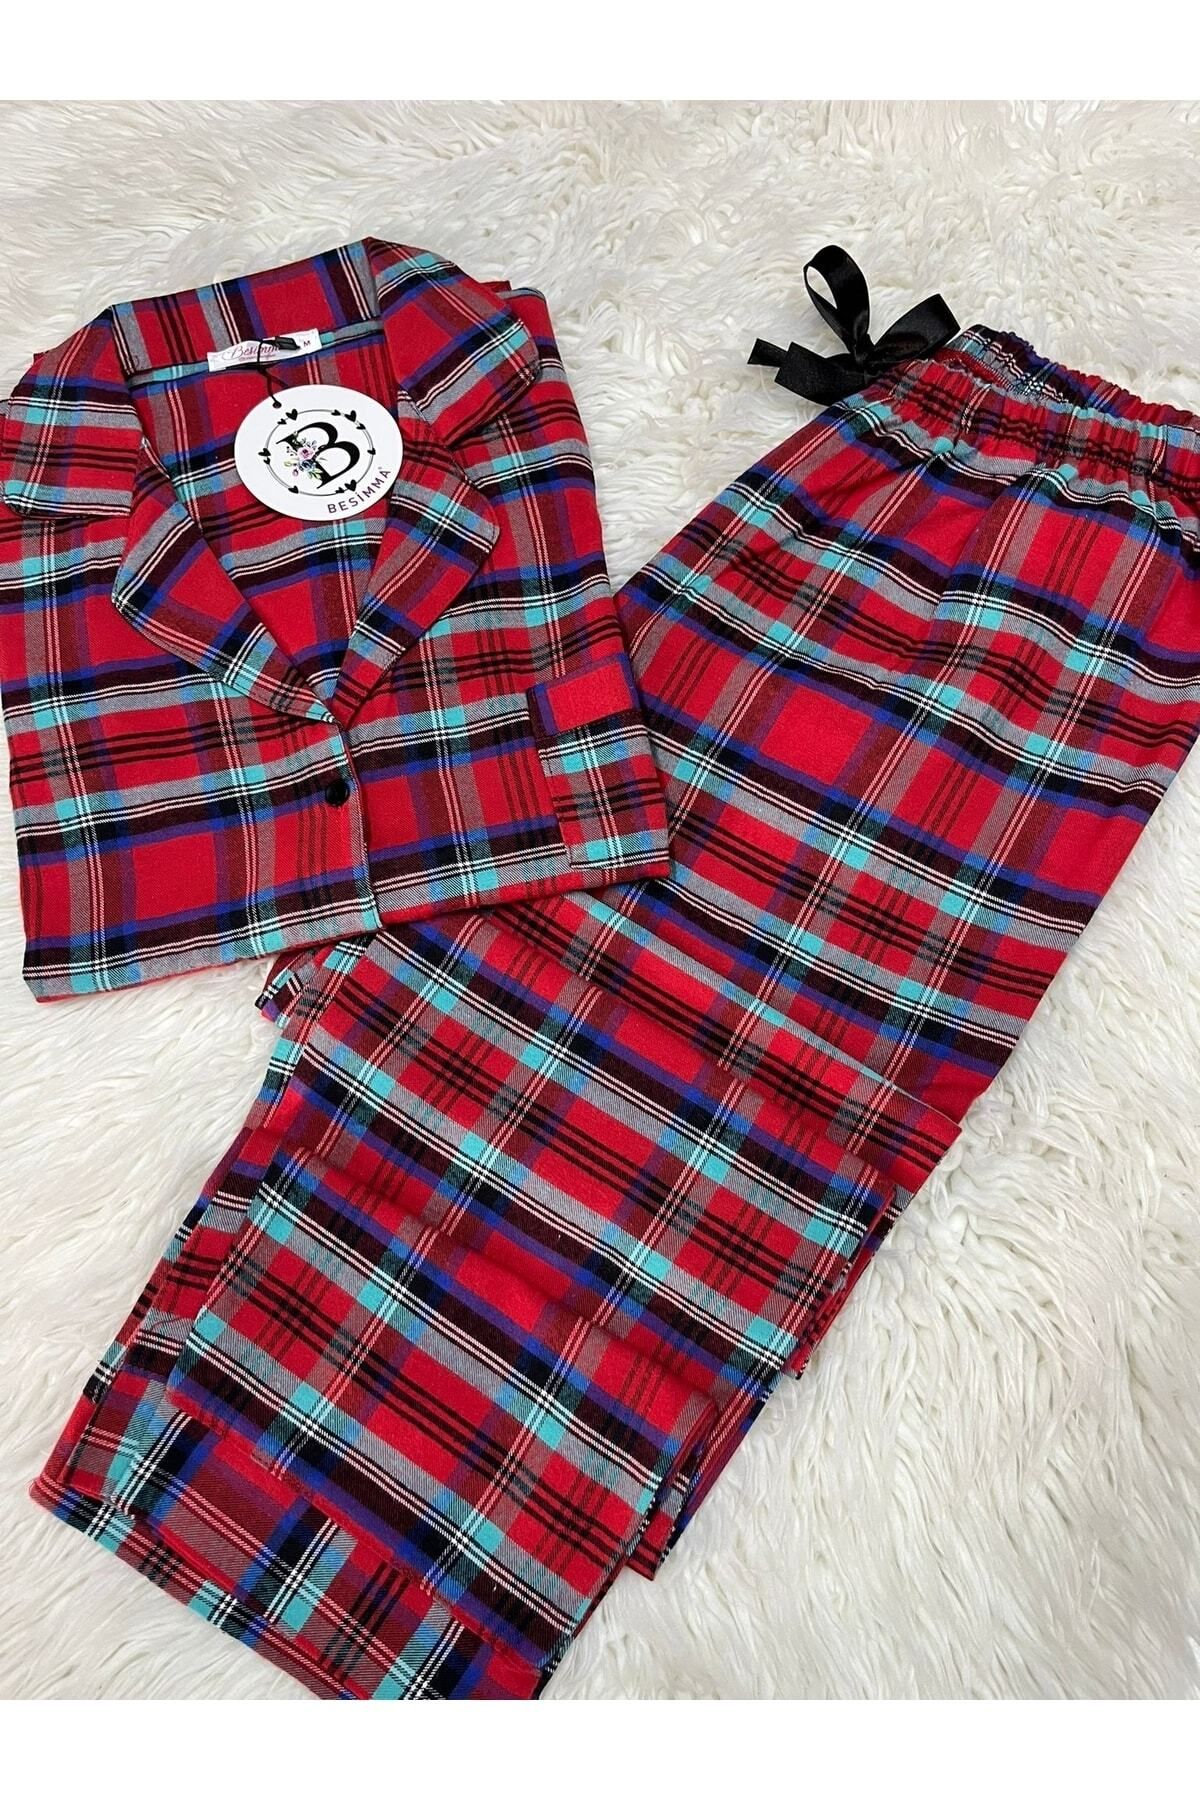 BESİMMA Kadın Uzun Kollu Kırmızı Turkuaz Ekose Flanel Pijama Takımı